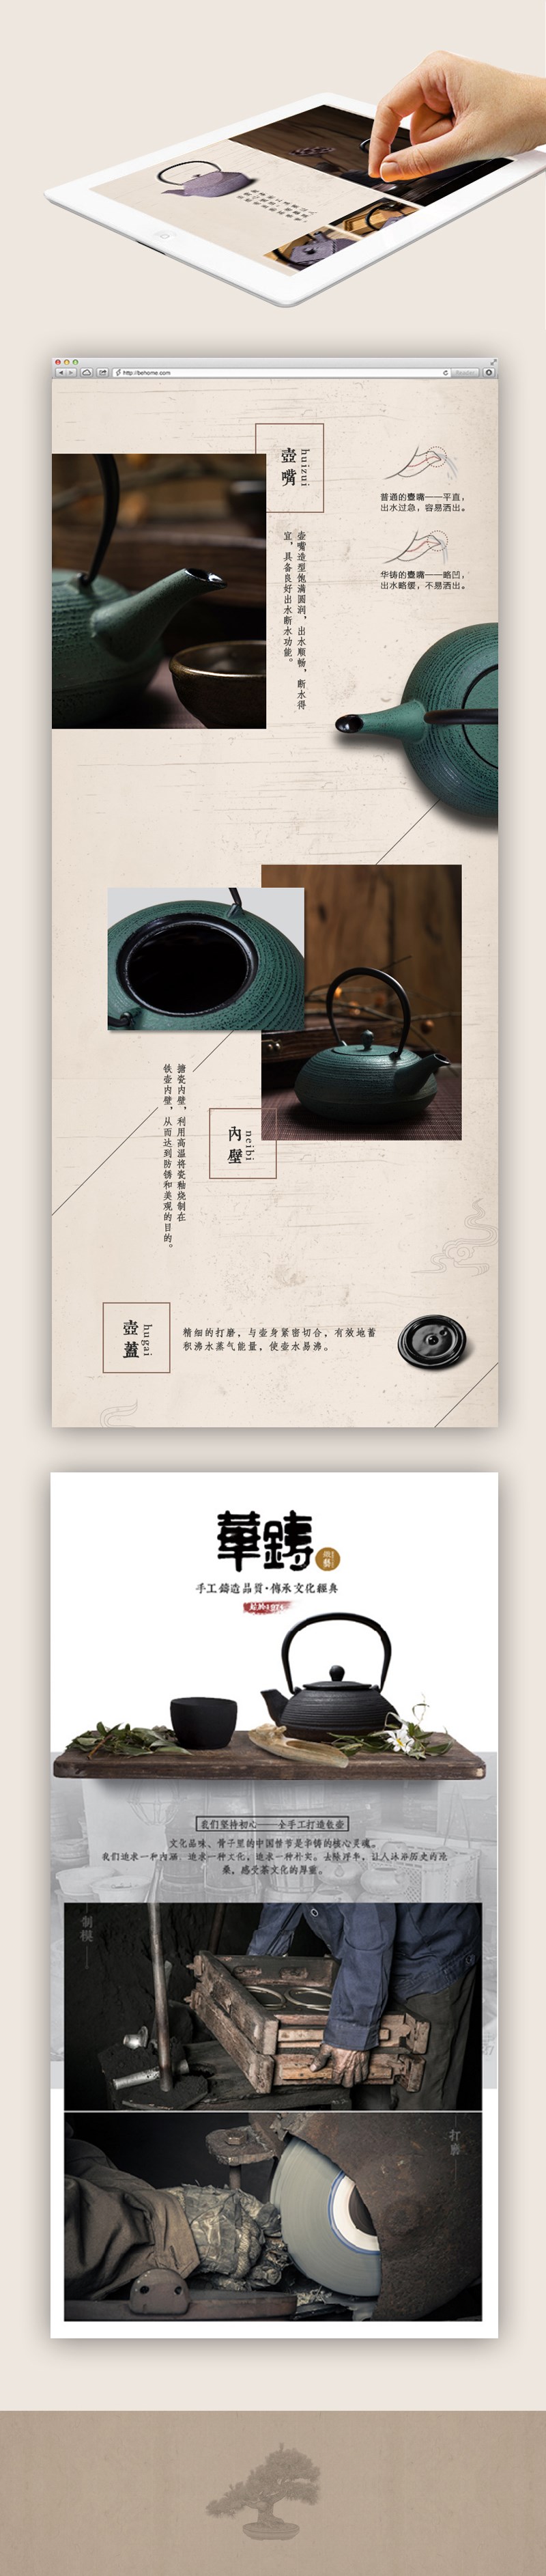 华铸铁壶线上淘宝店 淘宝天猫设计 网页设计 平面设计